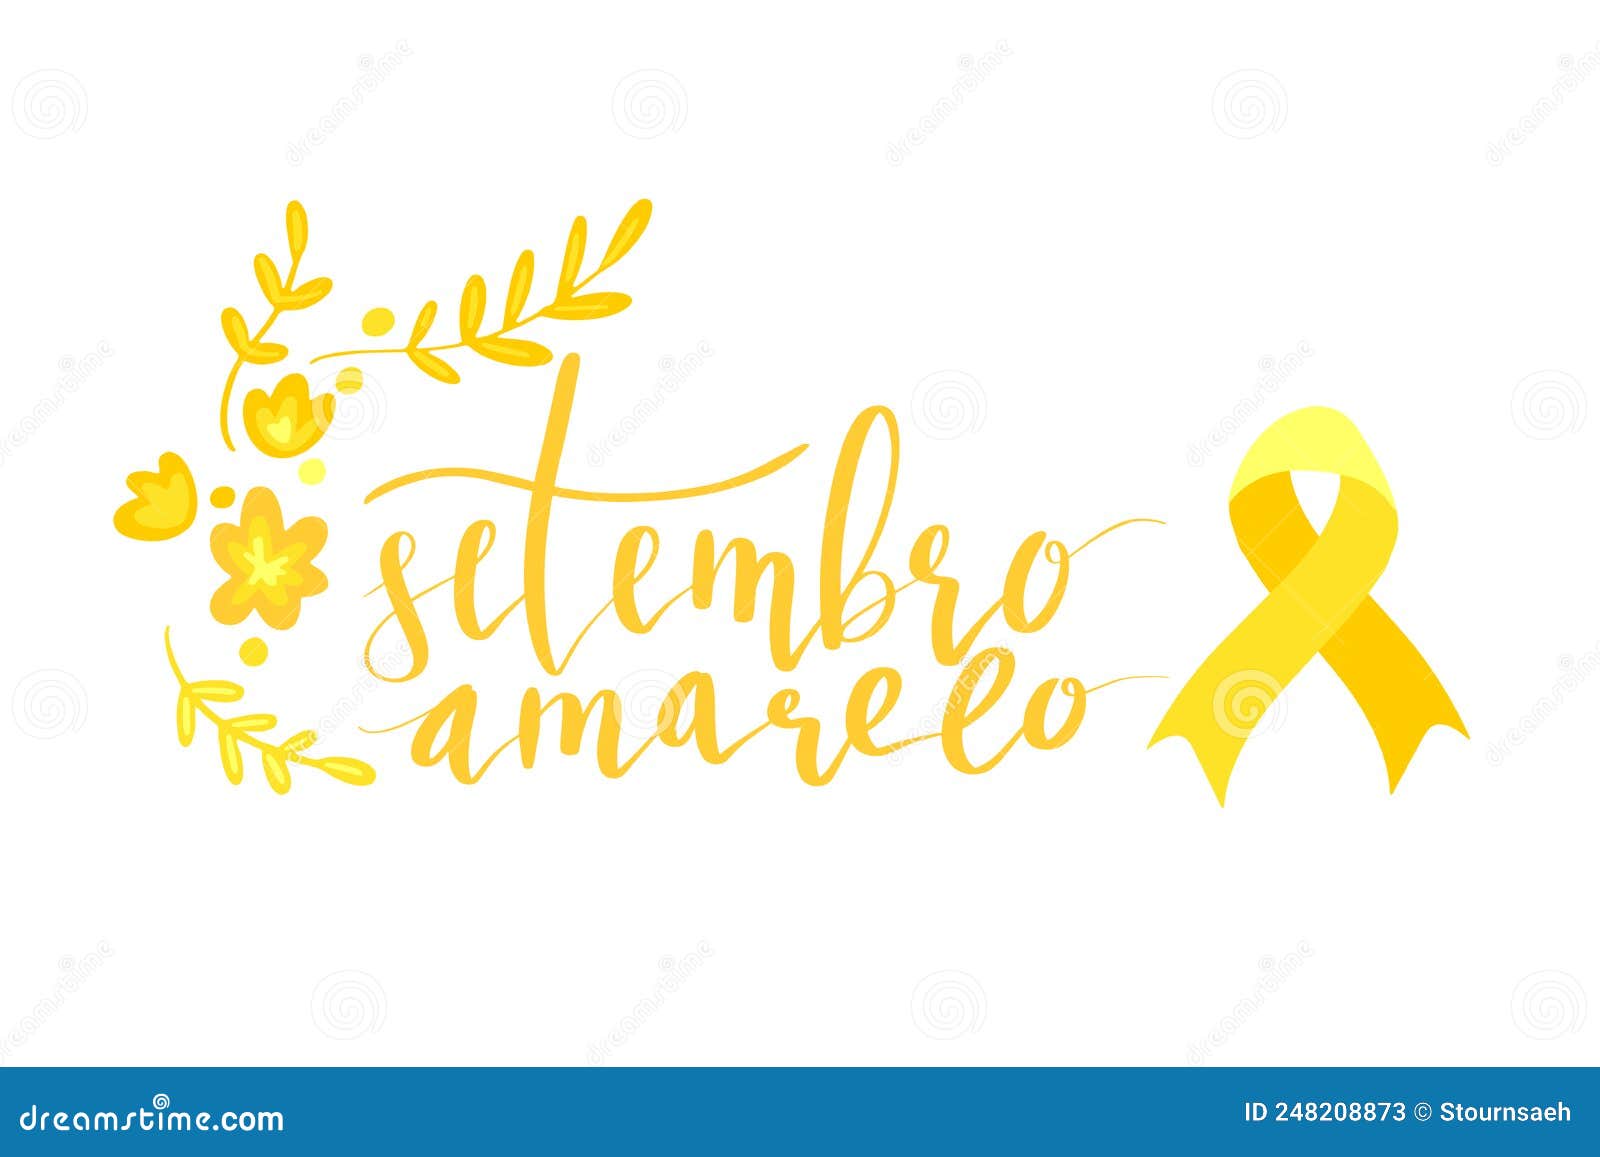 setembro amarelo - yellow sempteber in portuguese, brazillian, suicide prevention month. hand lettering 